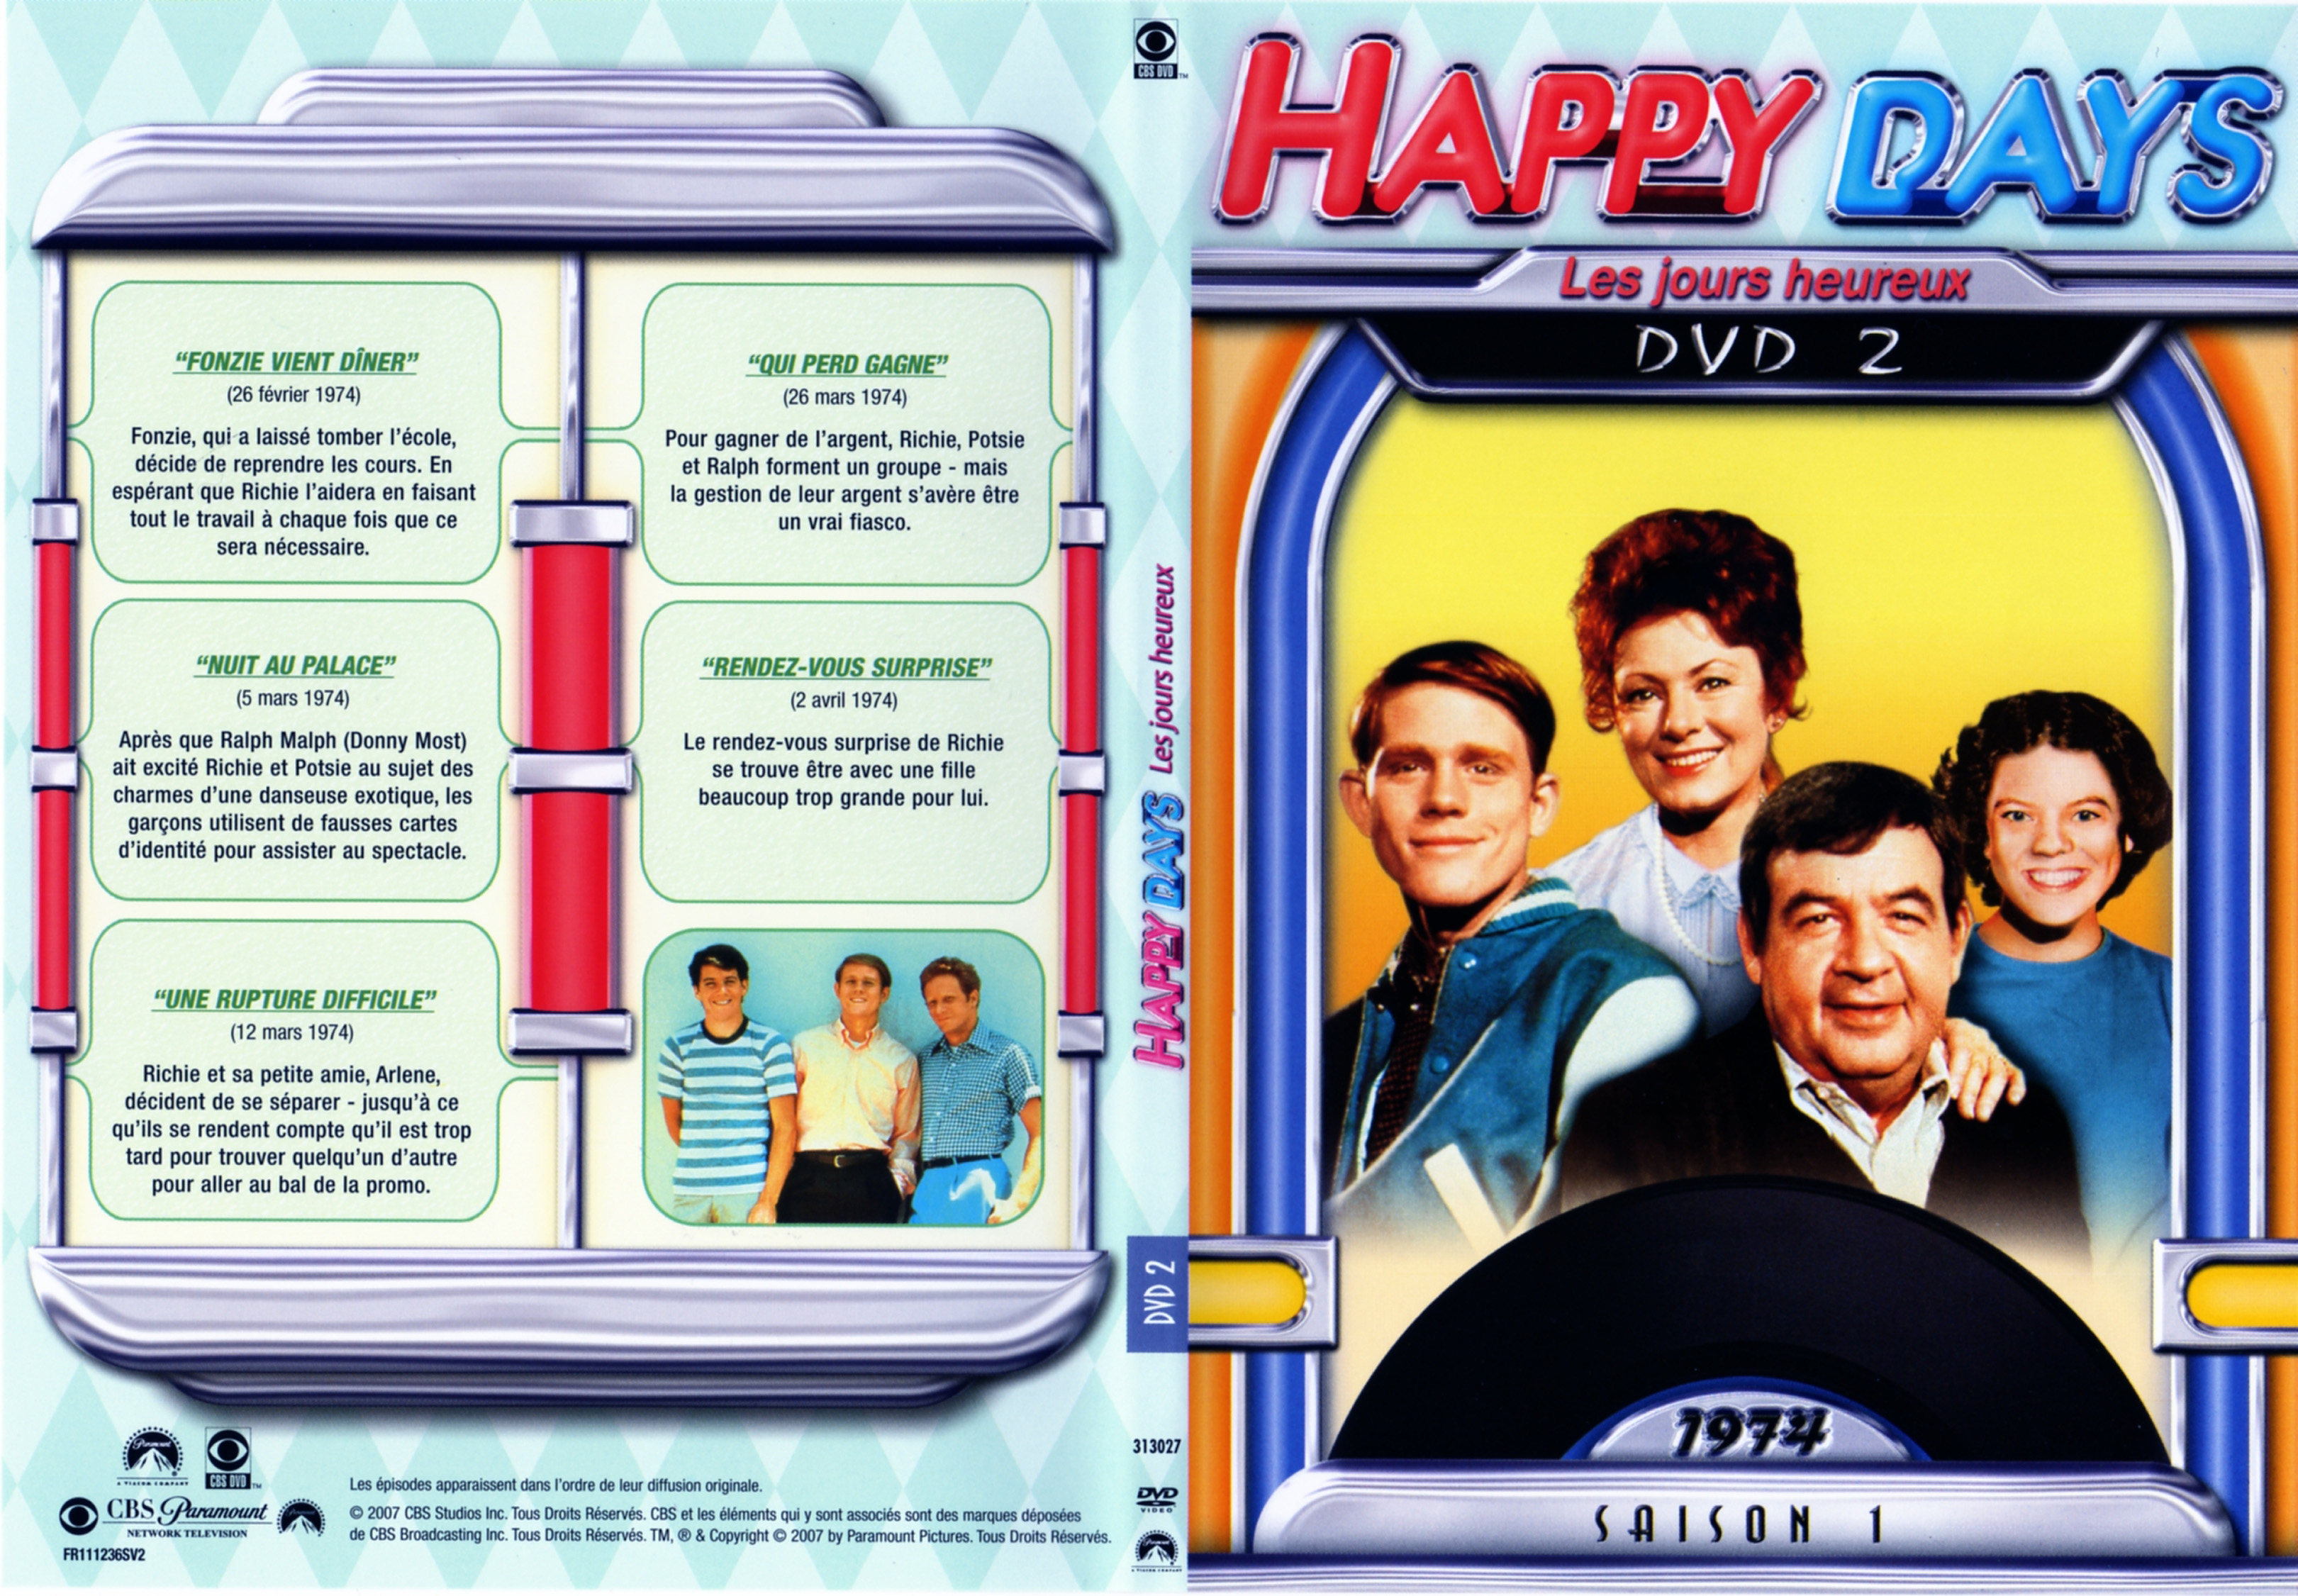 Jaquette DVD Happy days Saison 01 DVD 2